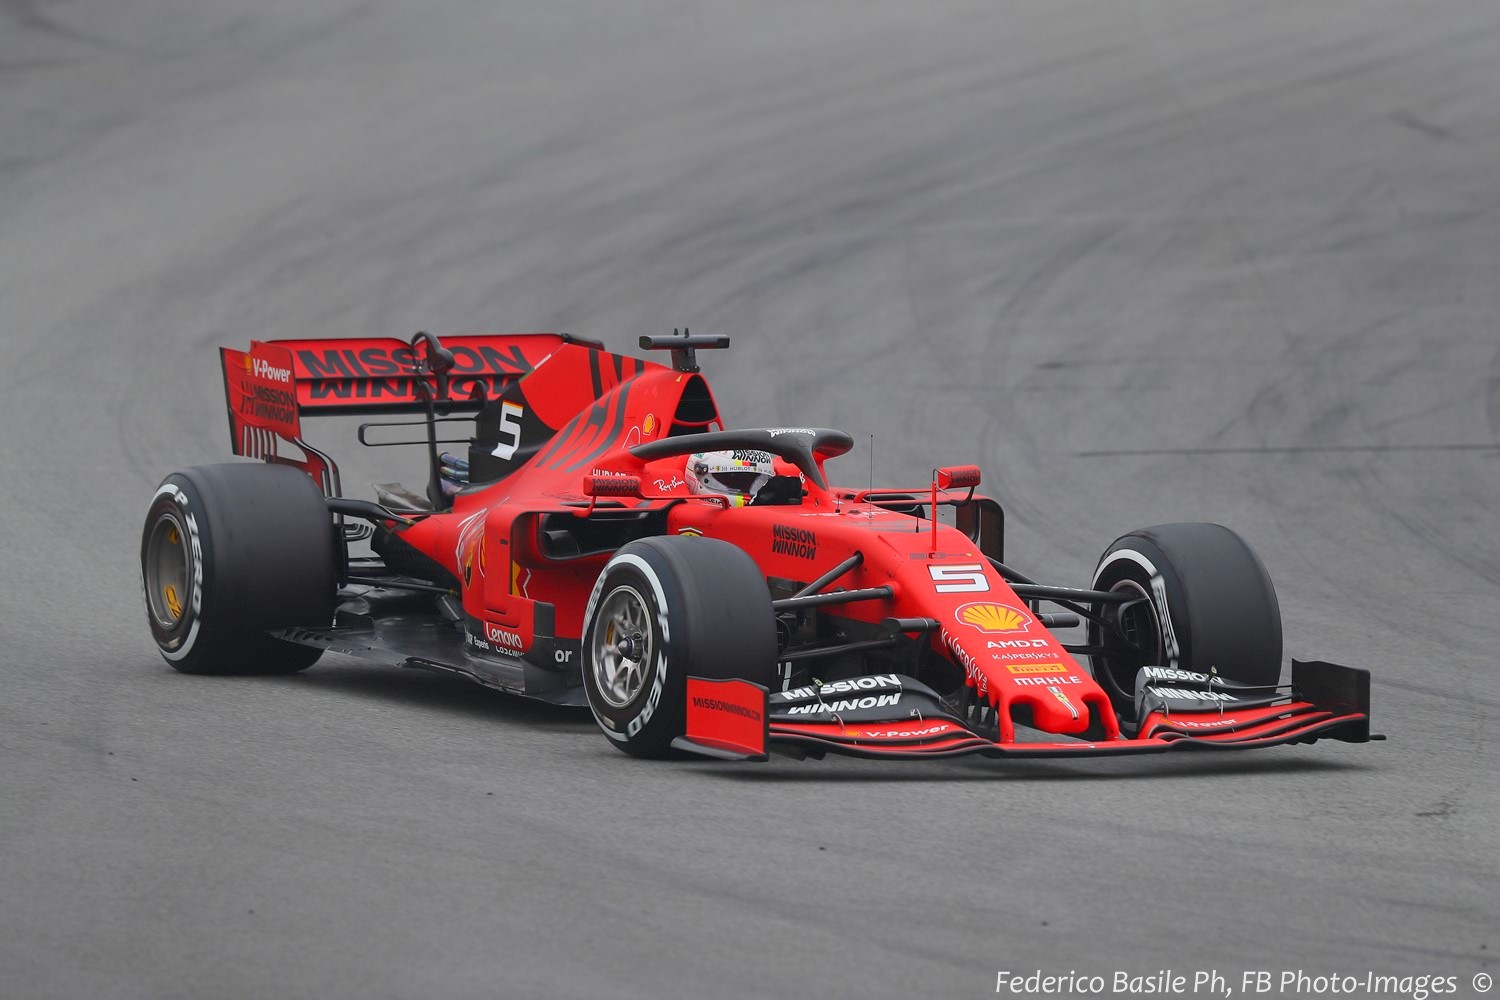 Luca di Montezemolo dislikes the 'flat' red color Ferrari